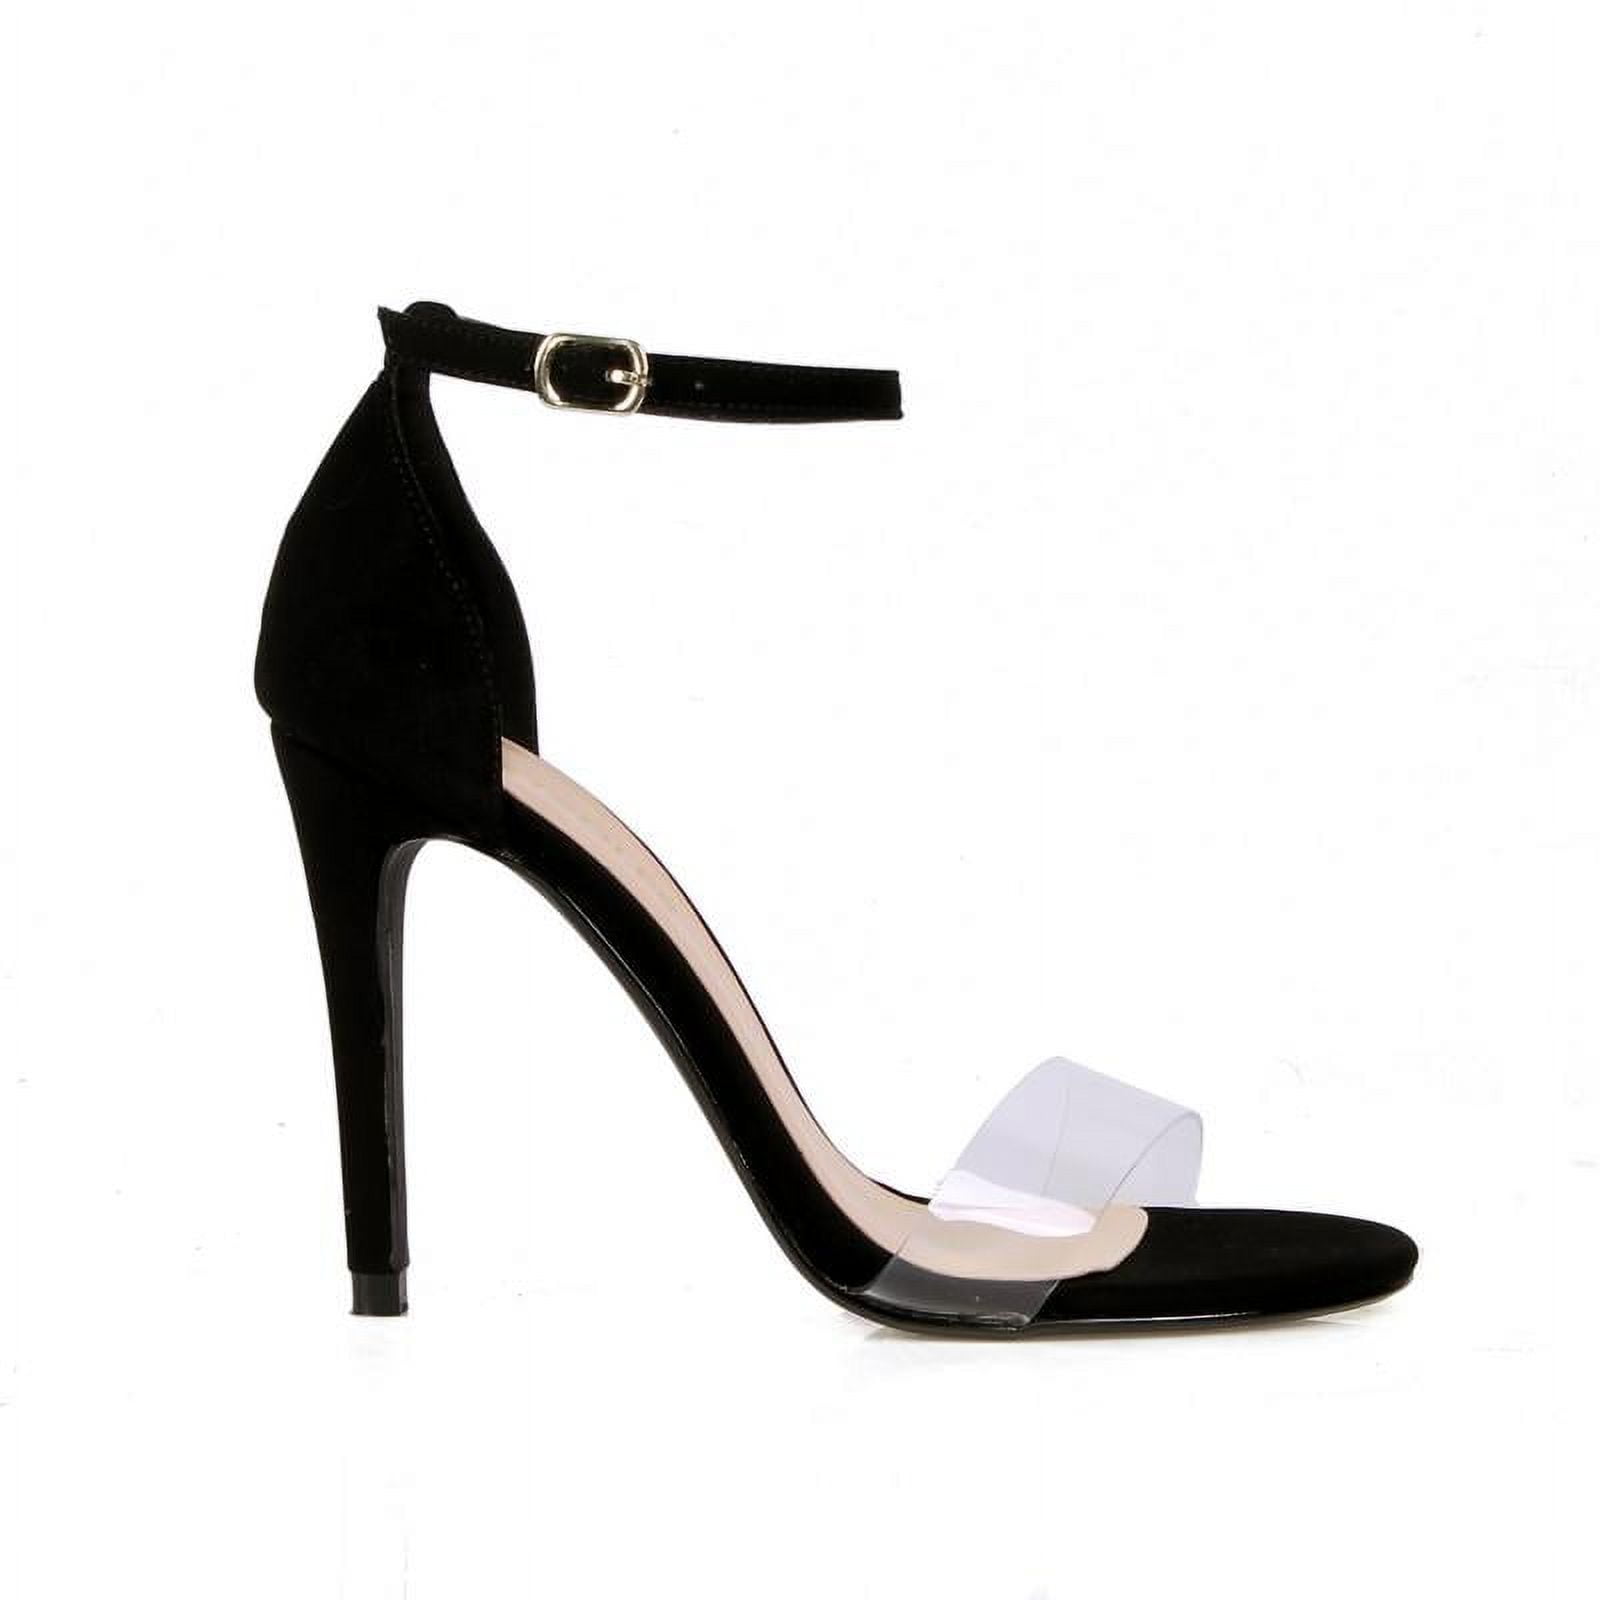 Jaque Black Vinyl Ankle Strap High Heel Sandals | Sandals heels, Ankle strap  high heels, High heel slippers